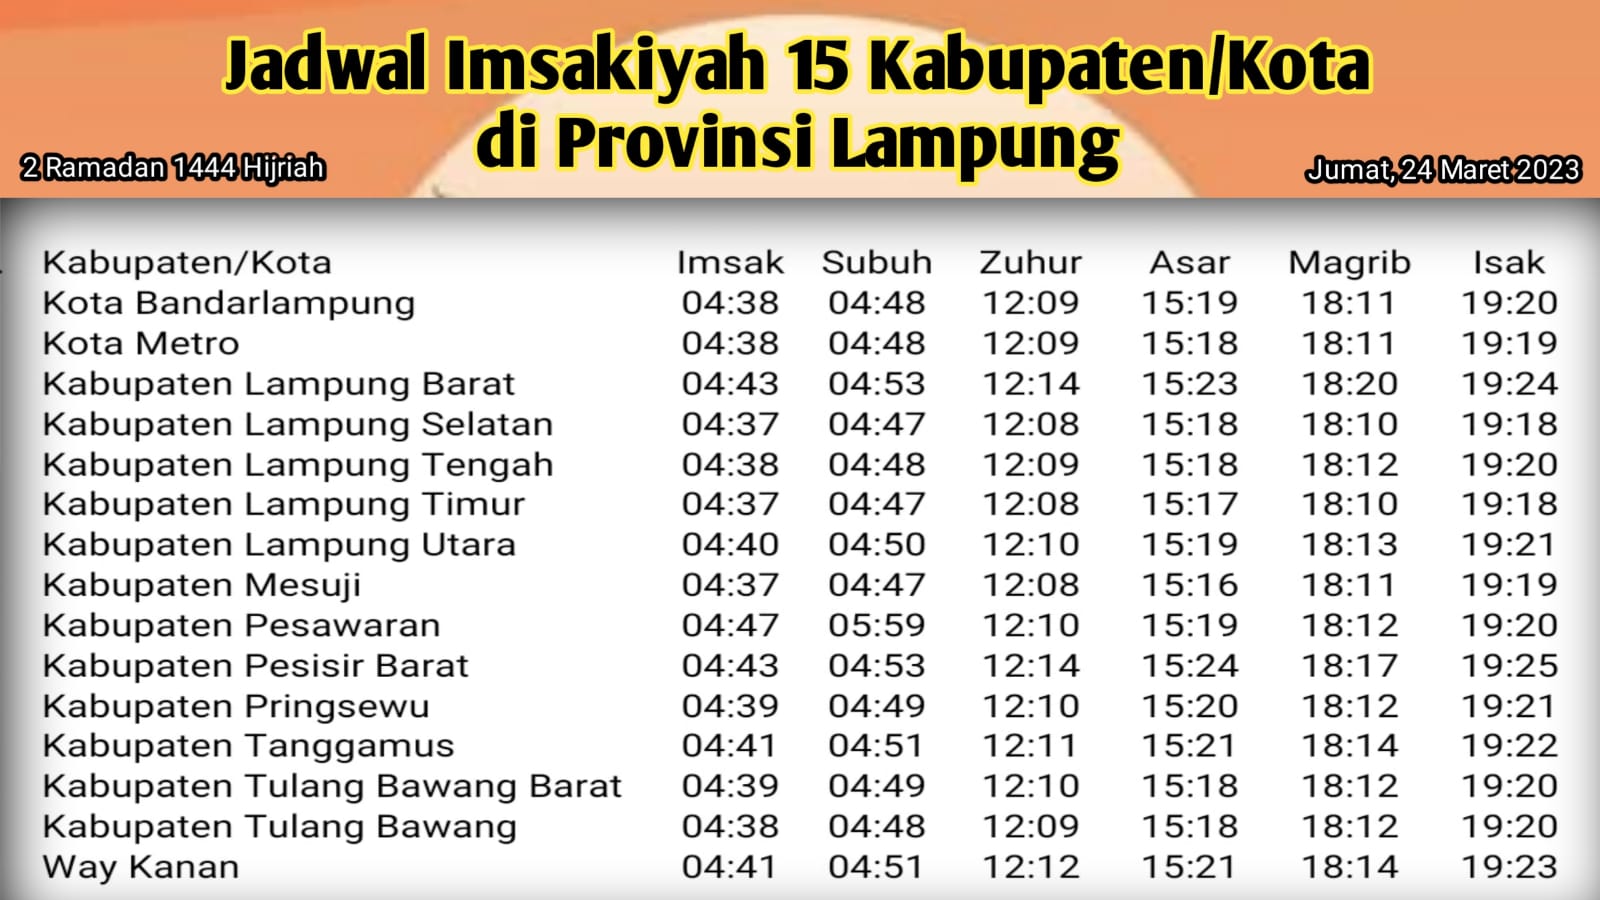 Jadwal Imsak di Provinsi Lampung, 2 Ramadan 1444 H/2023 M